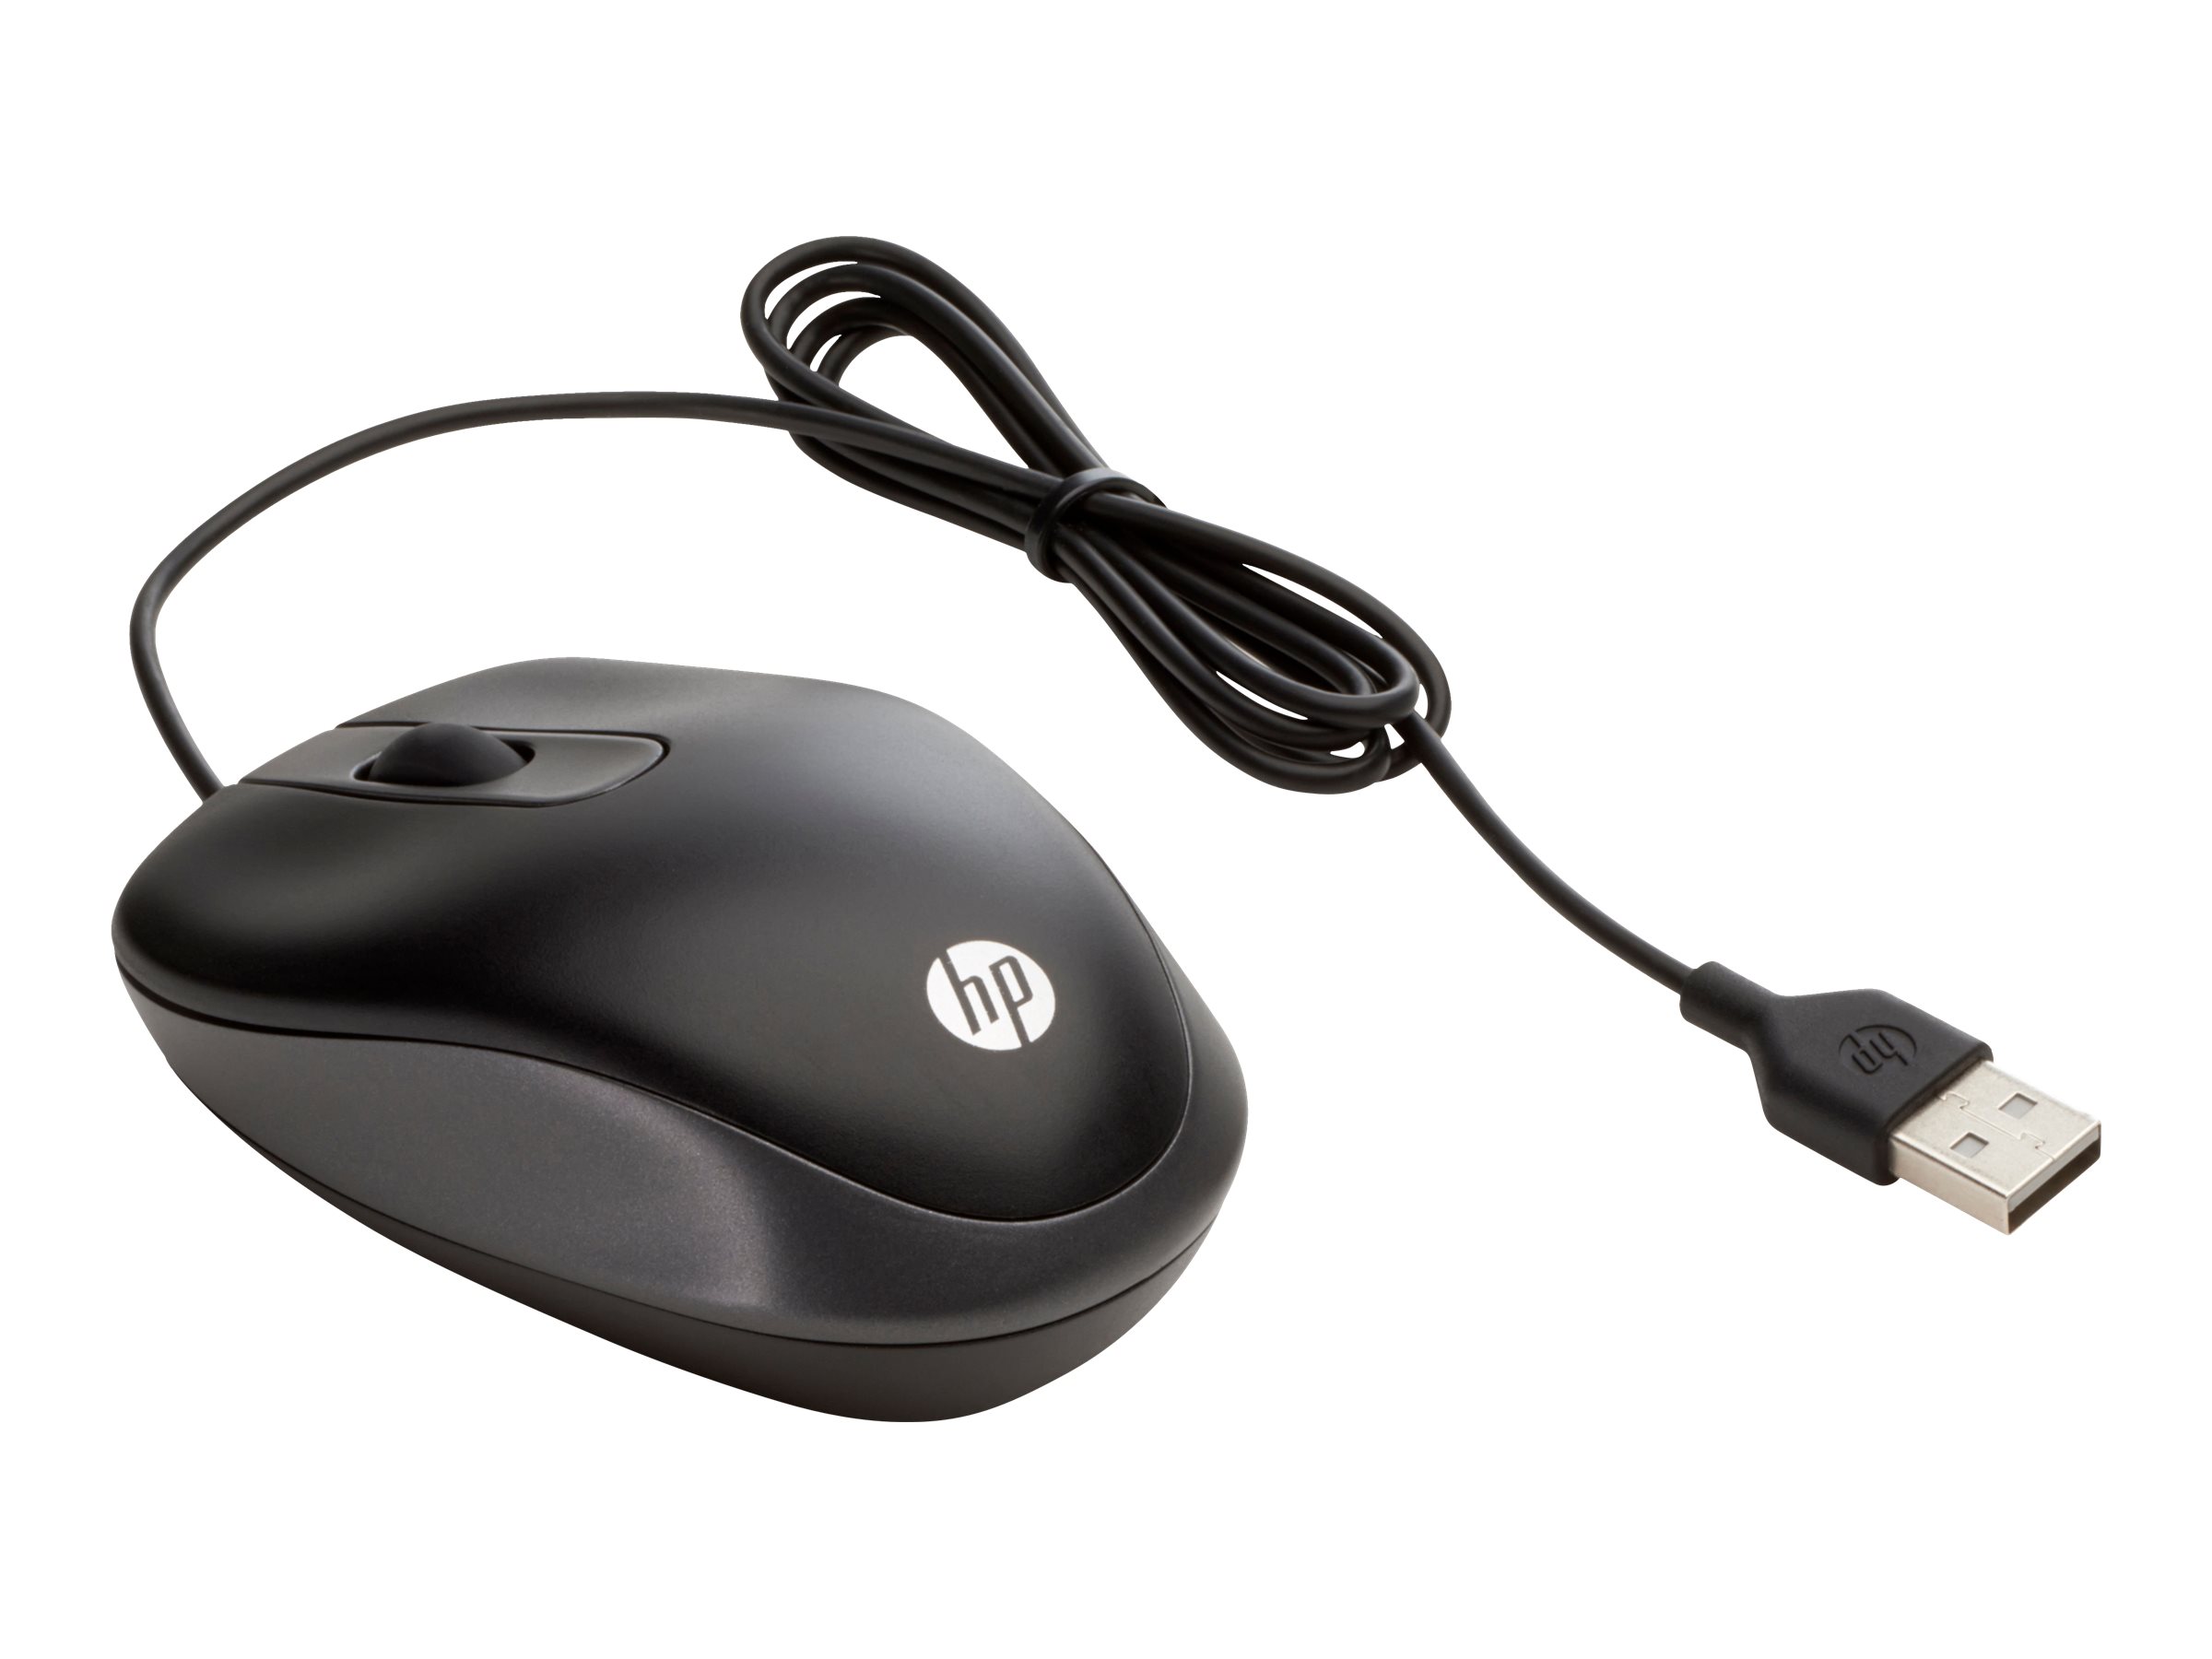 Temerity Belastingen statisch HP USB Travel Mouse - Bedraad - CloudConnected